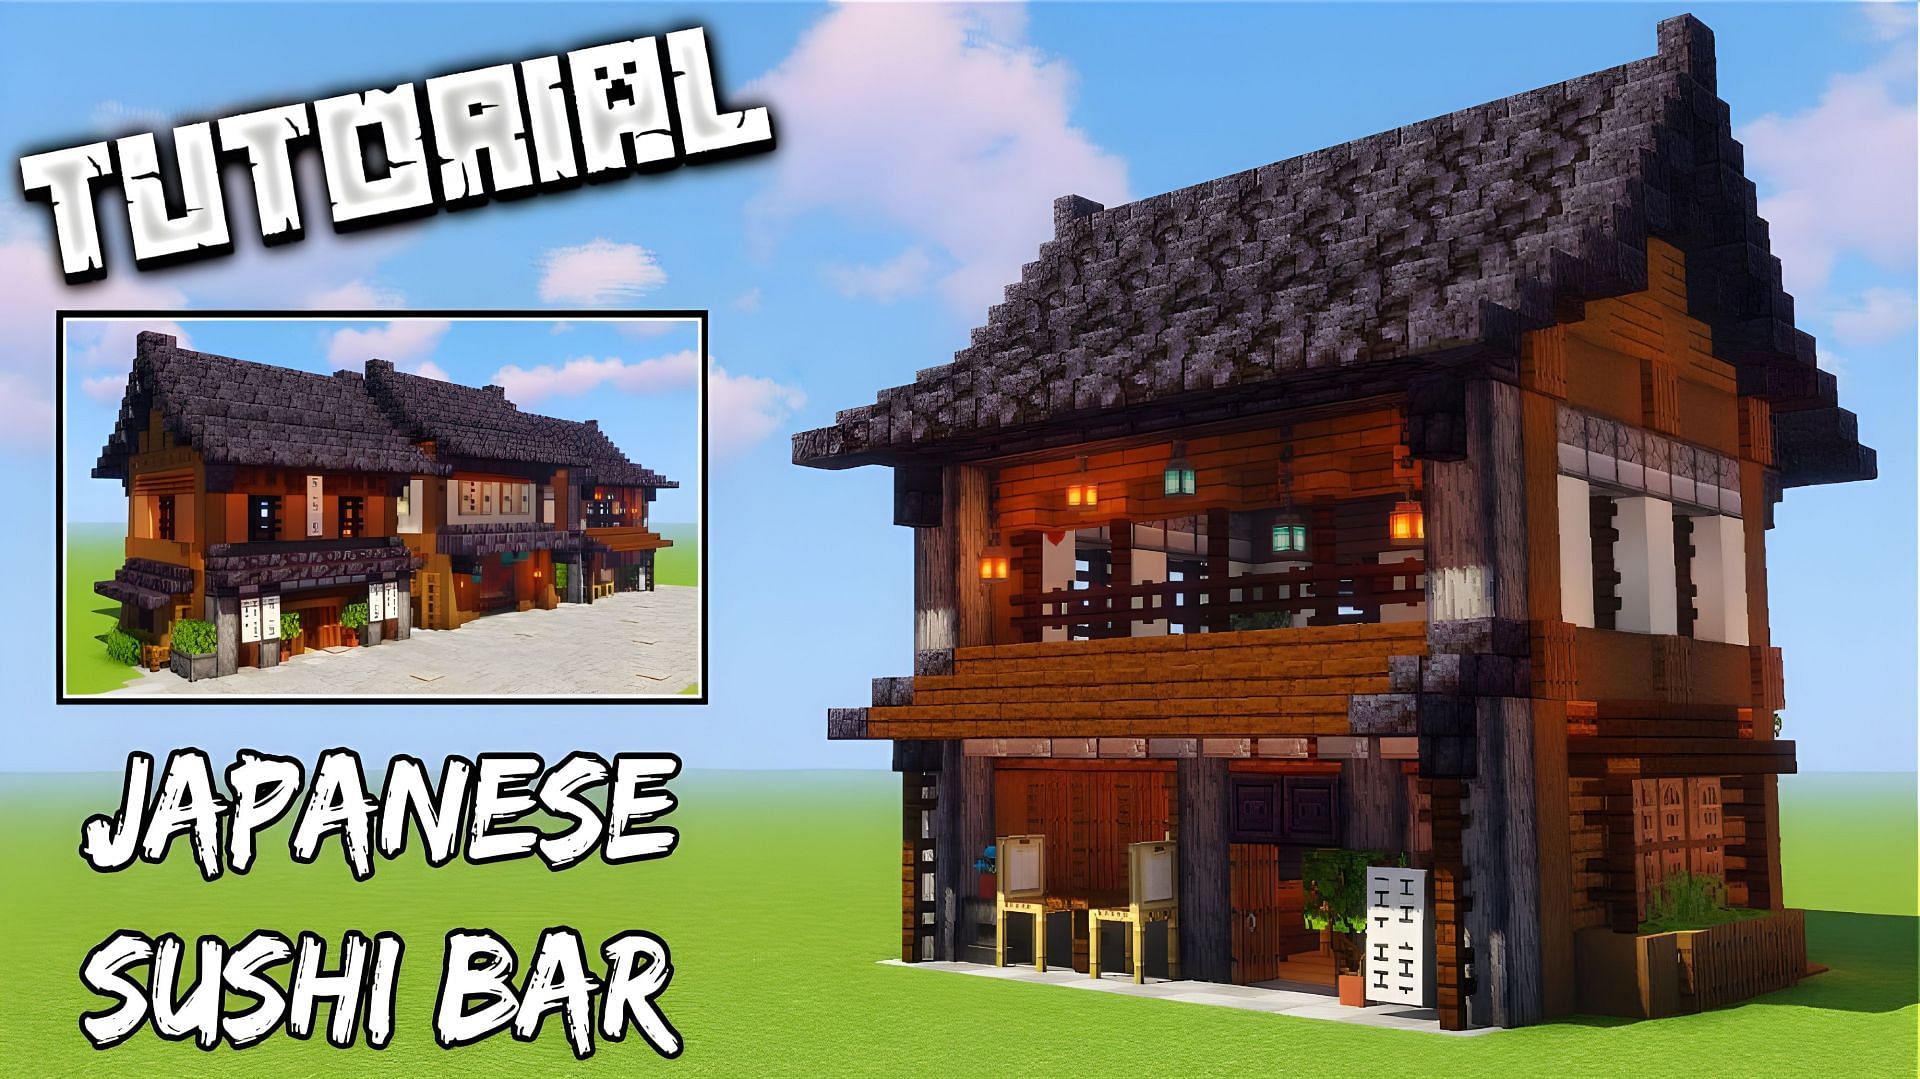 An amazing Japanese Sushi Bar (Image via YouTube/Cortezerino)